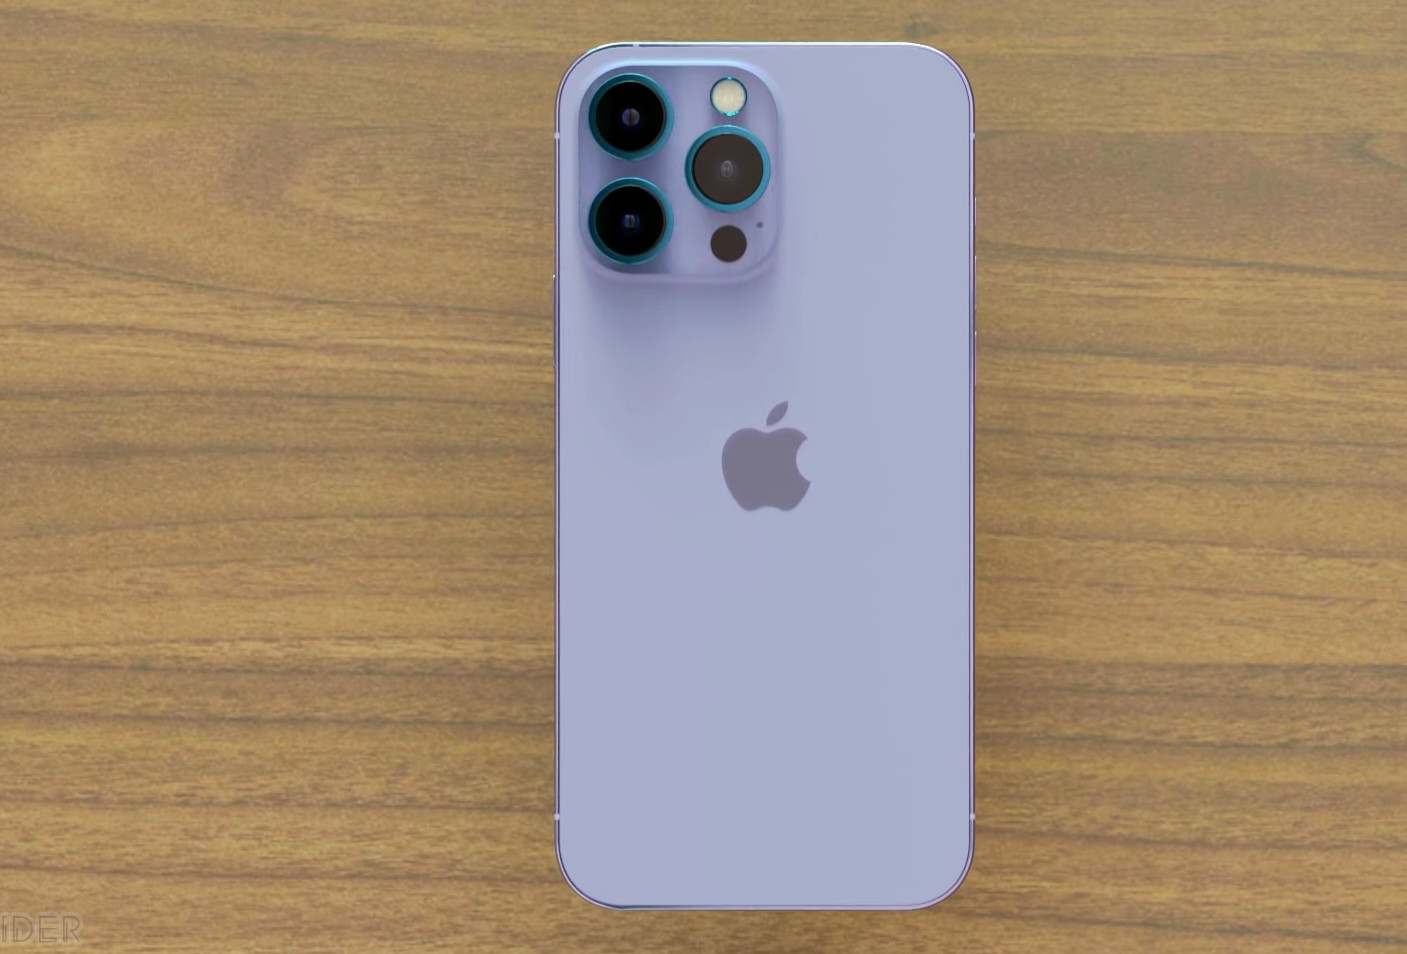 Mừng ngày ra mắt iPhone 14 Pro Max màu tím, sản phẩm sở hữu thiết kế đẹp mê hồn và cấu hình mạnh mẽ, sẵn sàng đem đến cho bạn trải nghiệm tuyệt vời. Hãy chiêm ngưỡng hình ảnh sản phẩm này để cảm nhận sự khác biệt và nâng cao trải nghiệm của bạn!